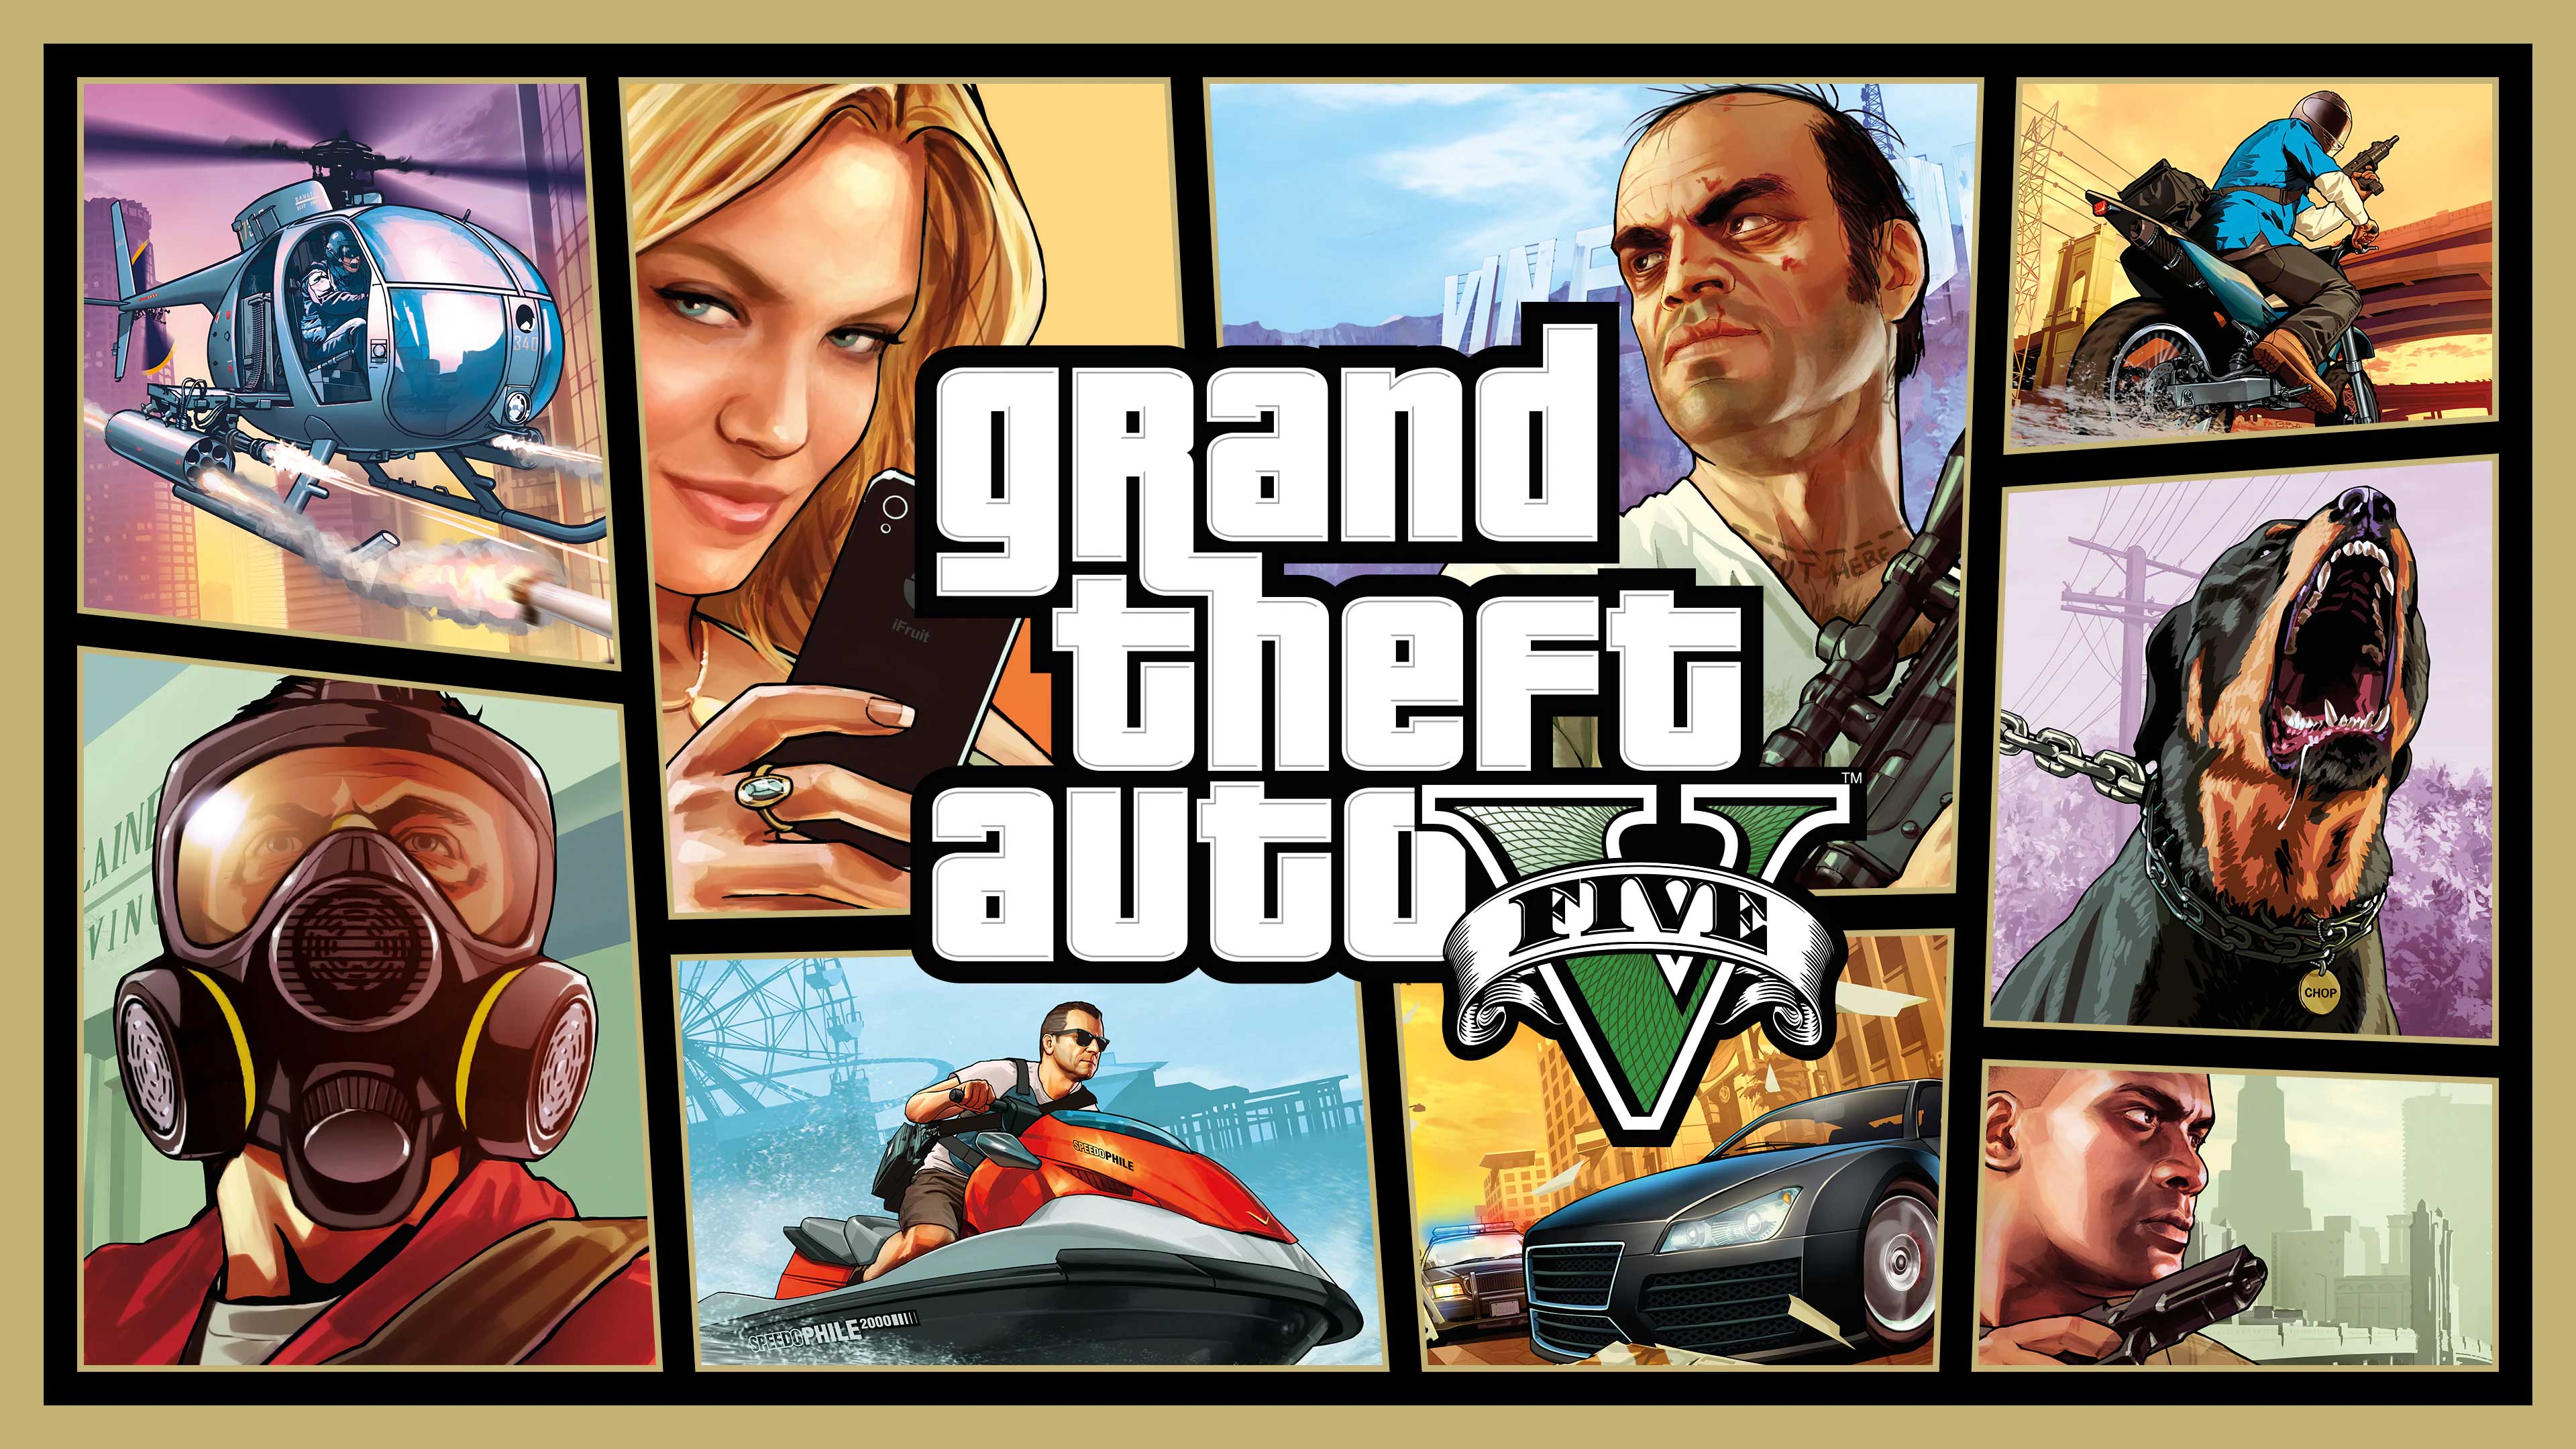 Grand Theft Auto V, Never Ending Level, neverendinglevel.com